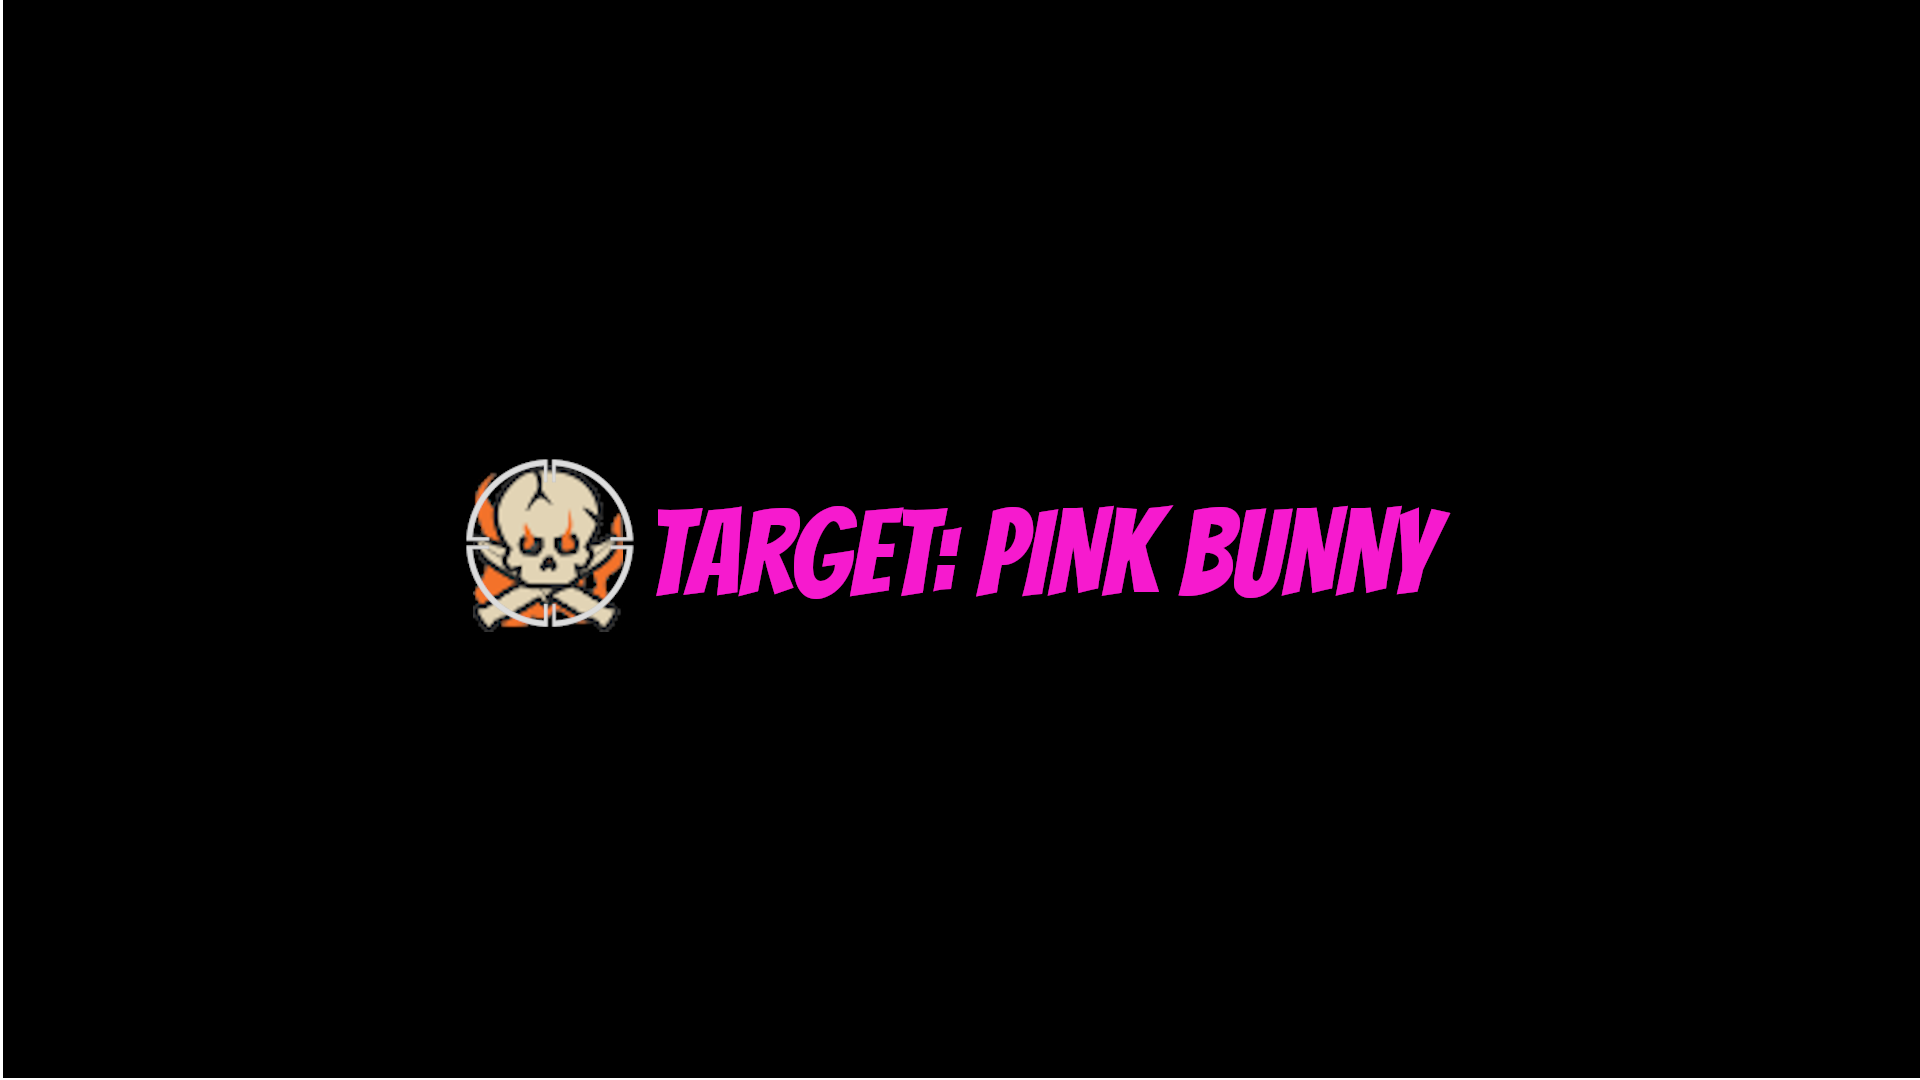 Target: Pink Bunny